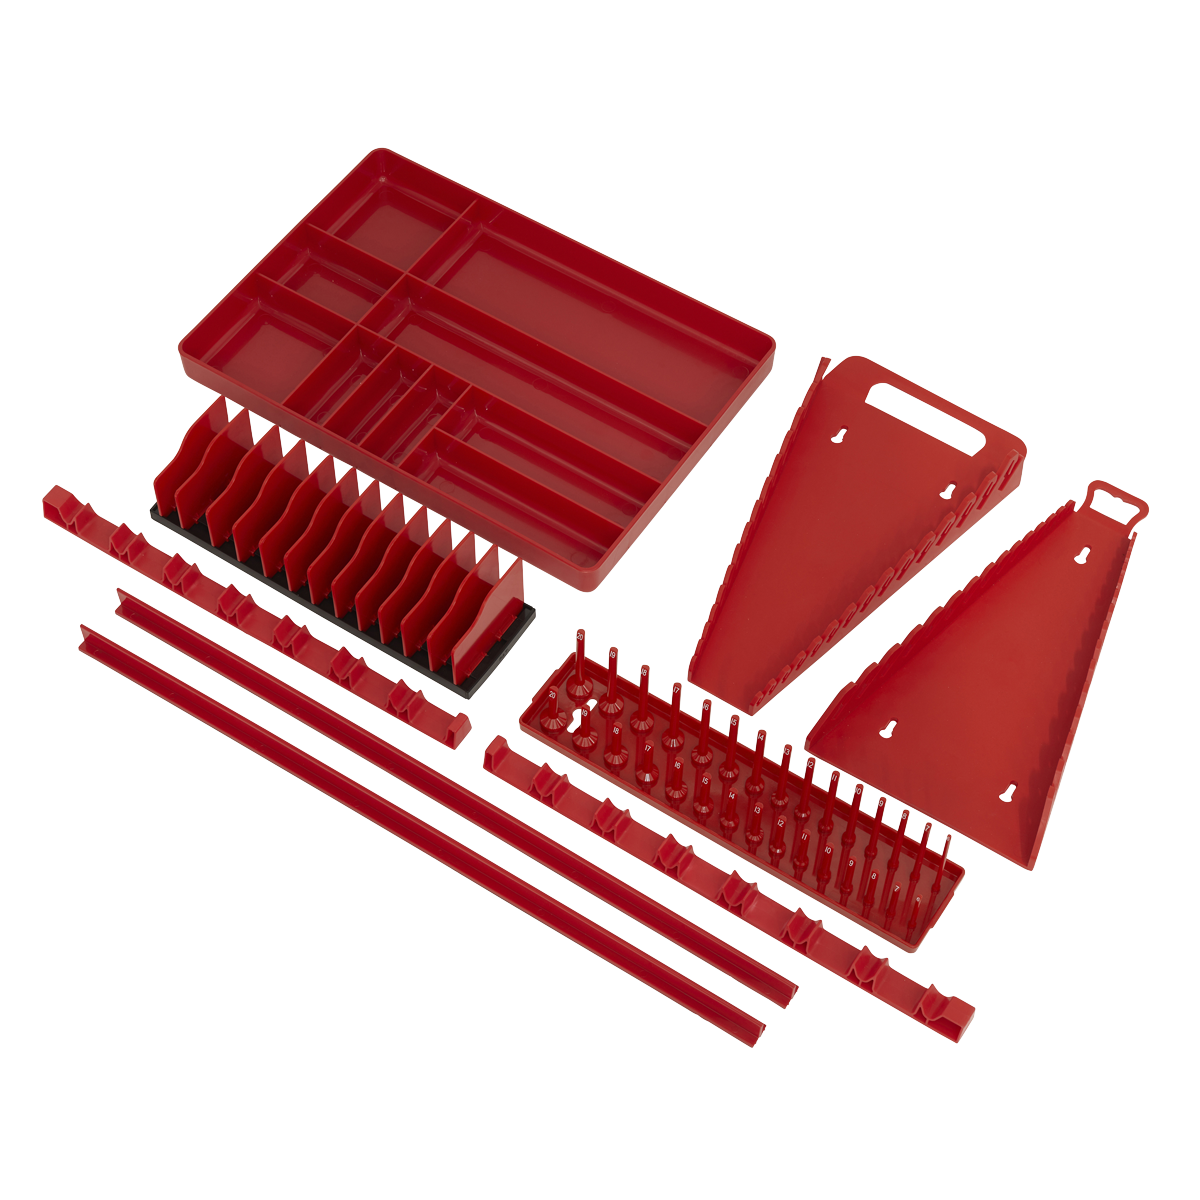 Sealey Tool Storage Organiser Set 9pc TSK01